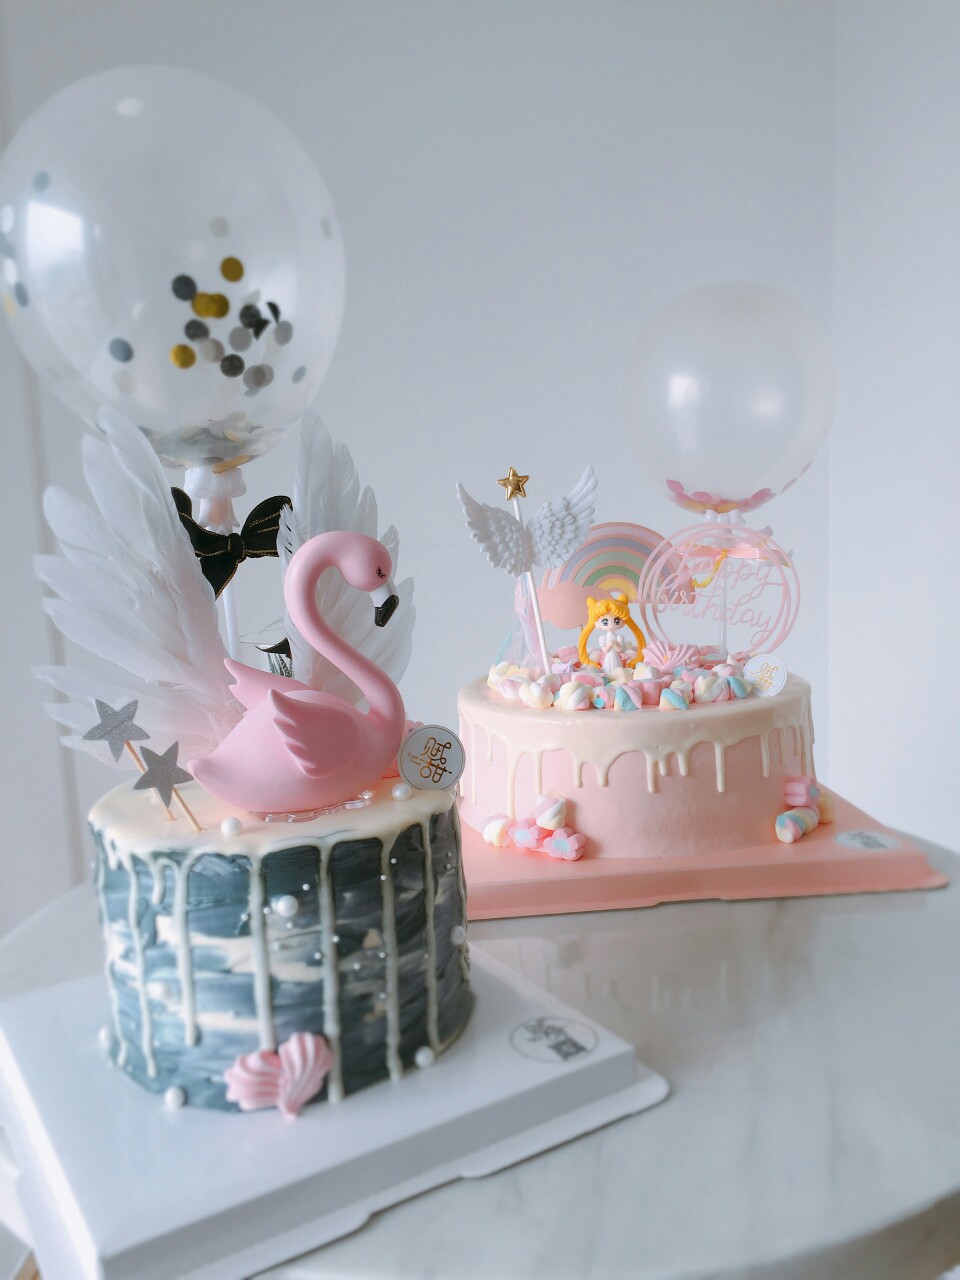 火烈鸟&美少女生日蛋糕·贼甜